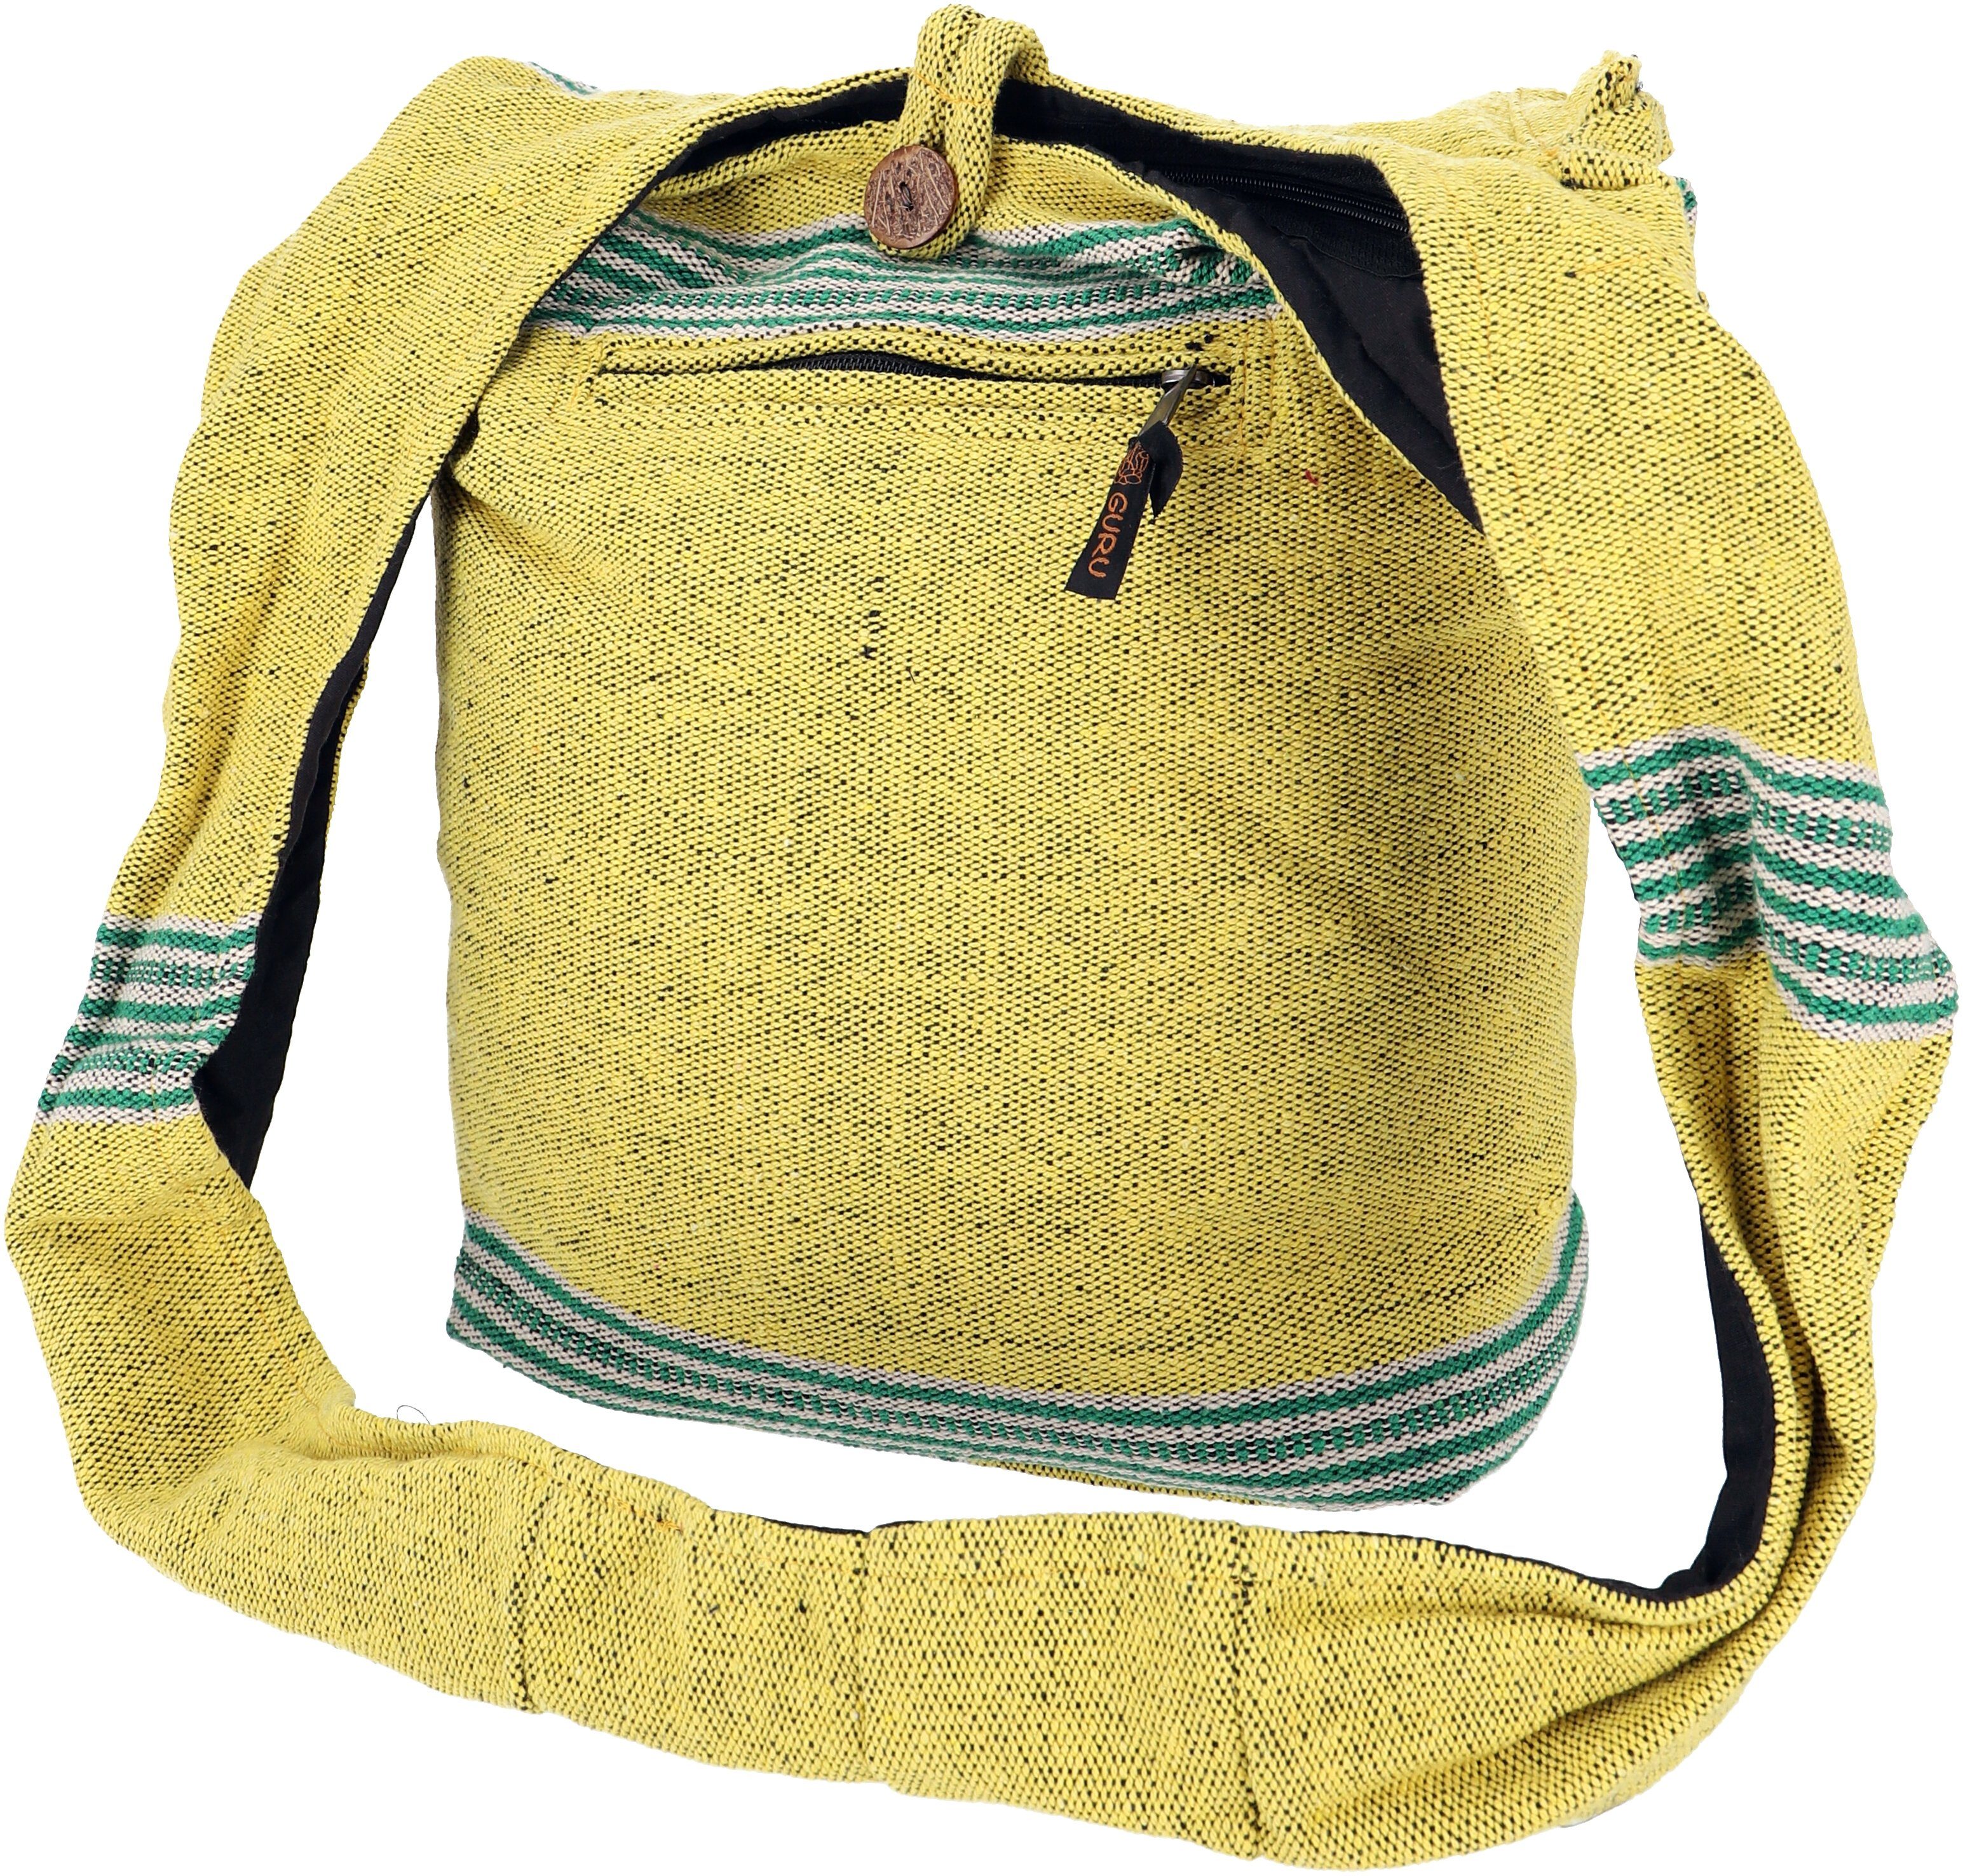 Guru-Shop Schultertasche Ethno Schulterbeutel, Nepal Tasche - Modell 10